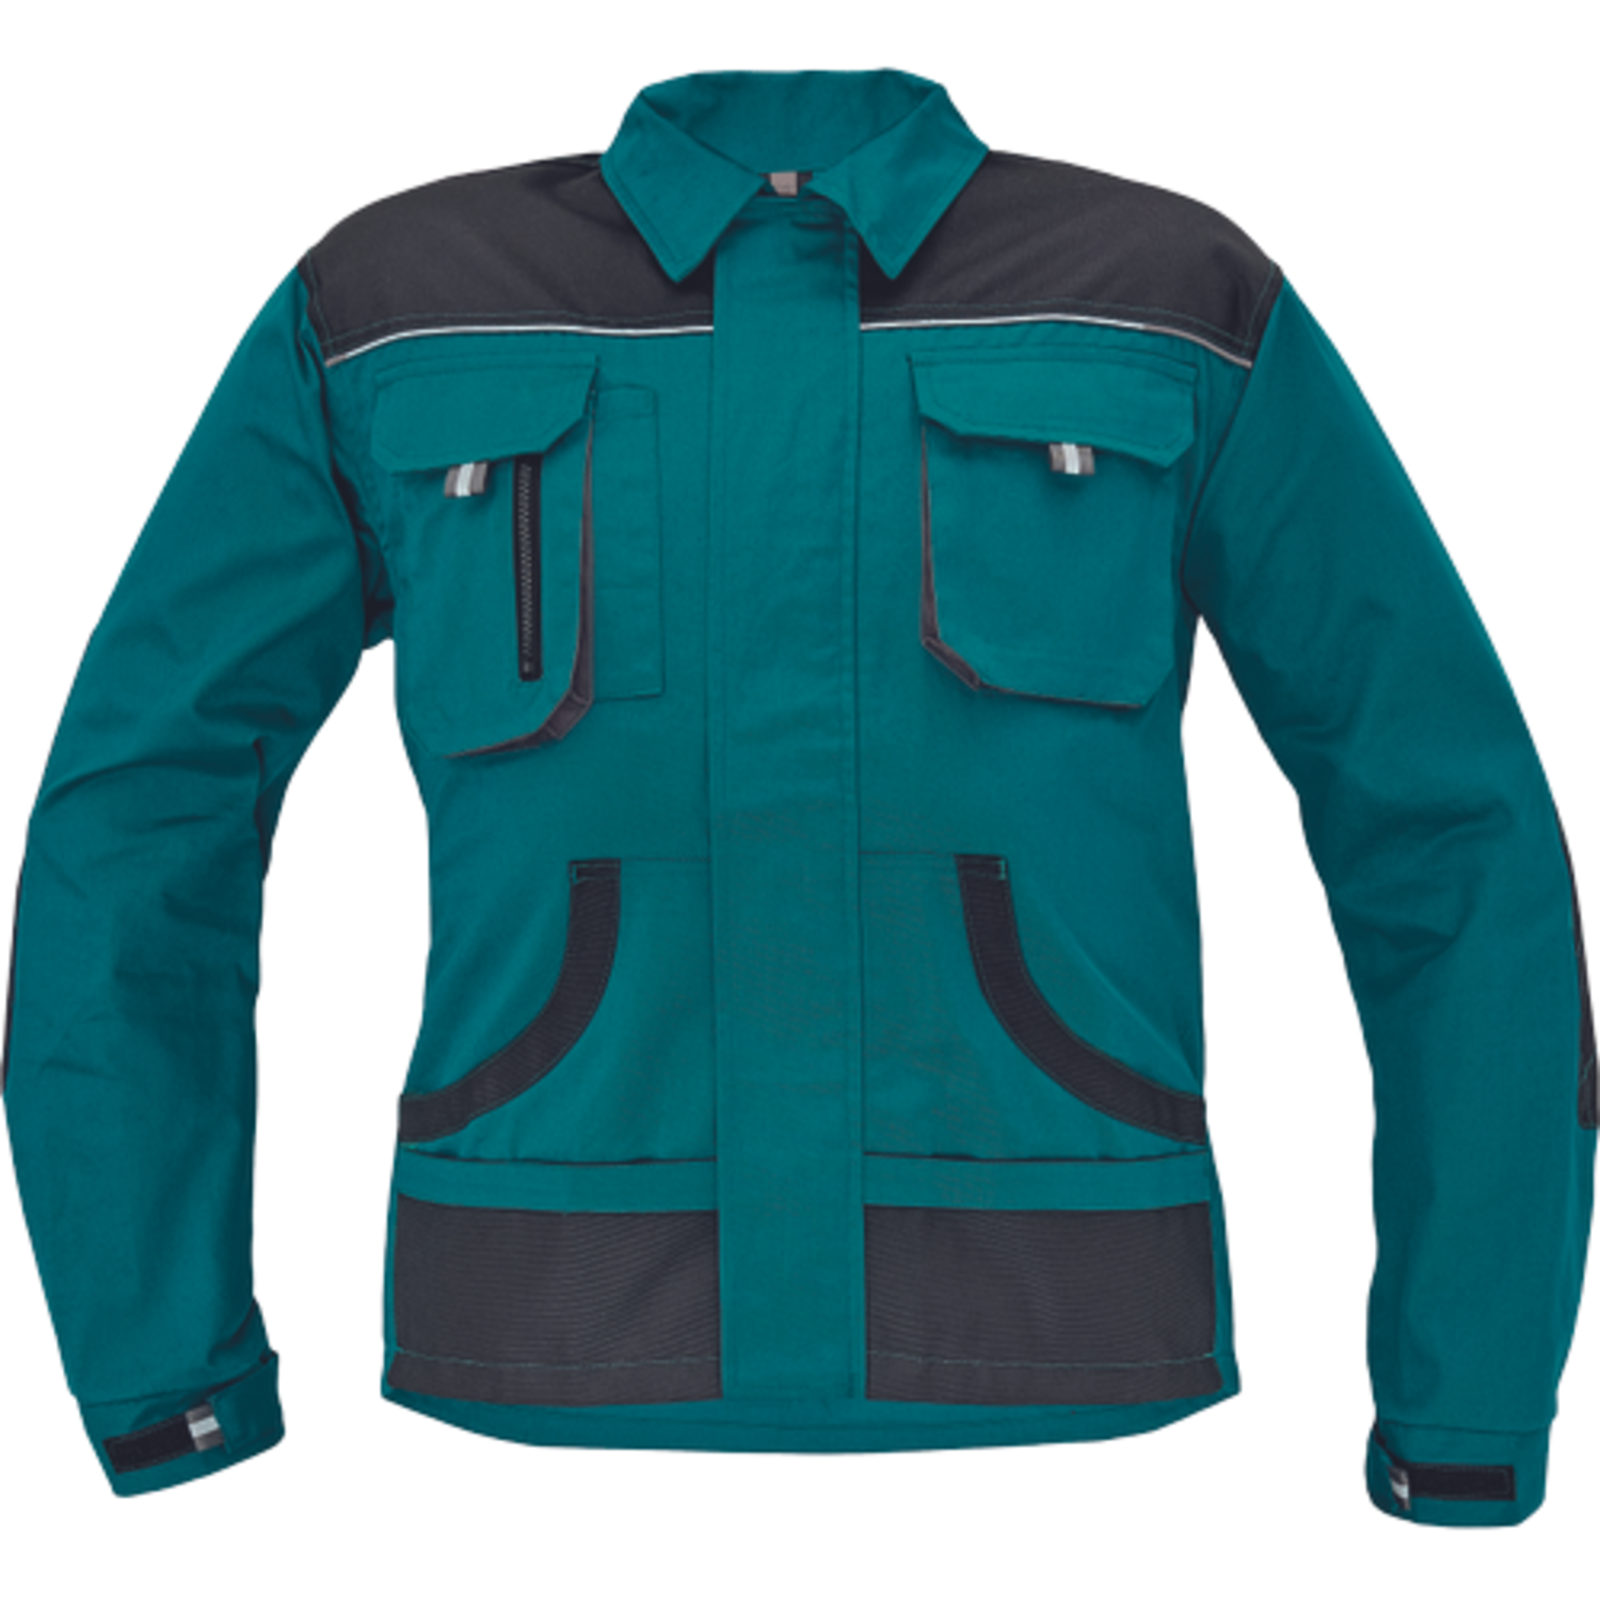 Odolná pracovná bunda Cerva FF Hans - veľkosť: 64, farba: zelená/antracit